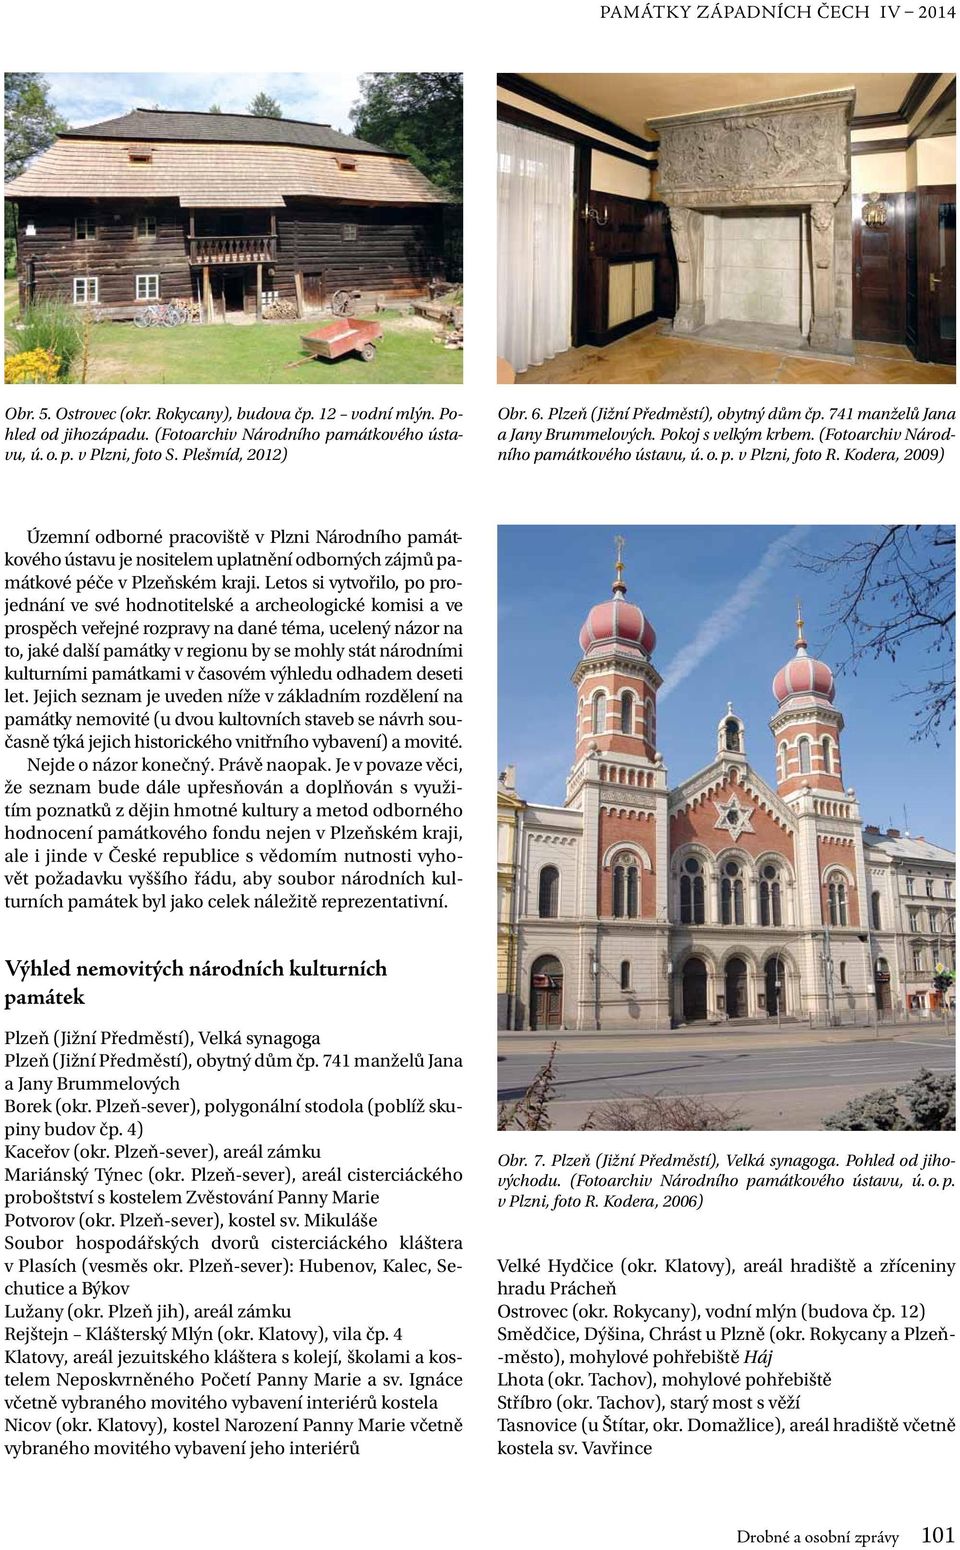 Kodera, 2009) Územní odborné pracoviště v Plzni Národního památkového ústavu je nositelem uplatnění odborných zájmů památkové péče v Plzeňském kraji.